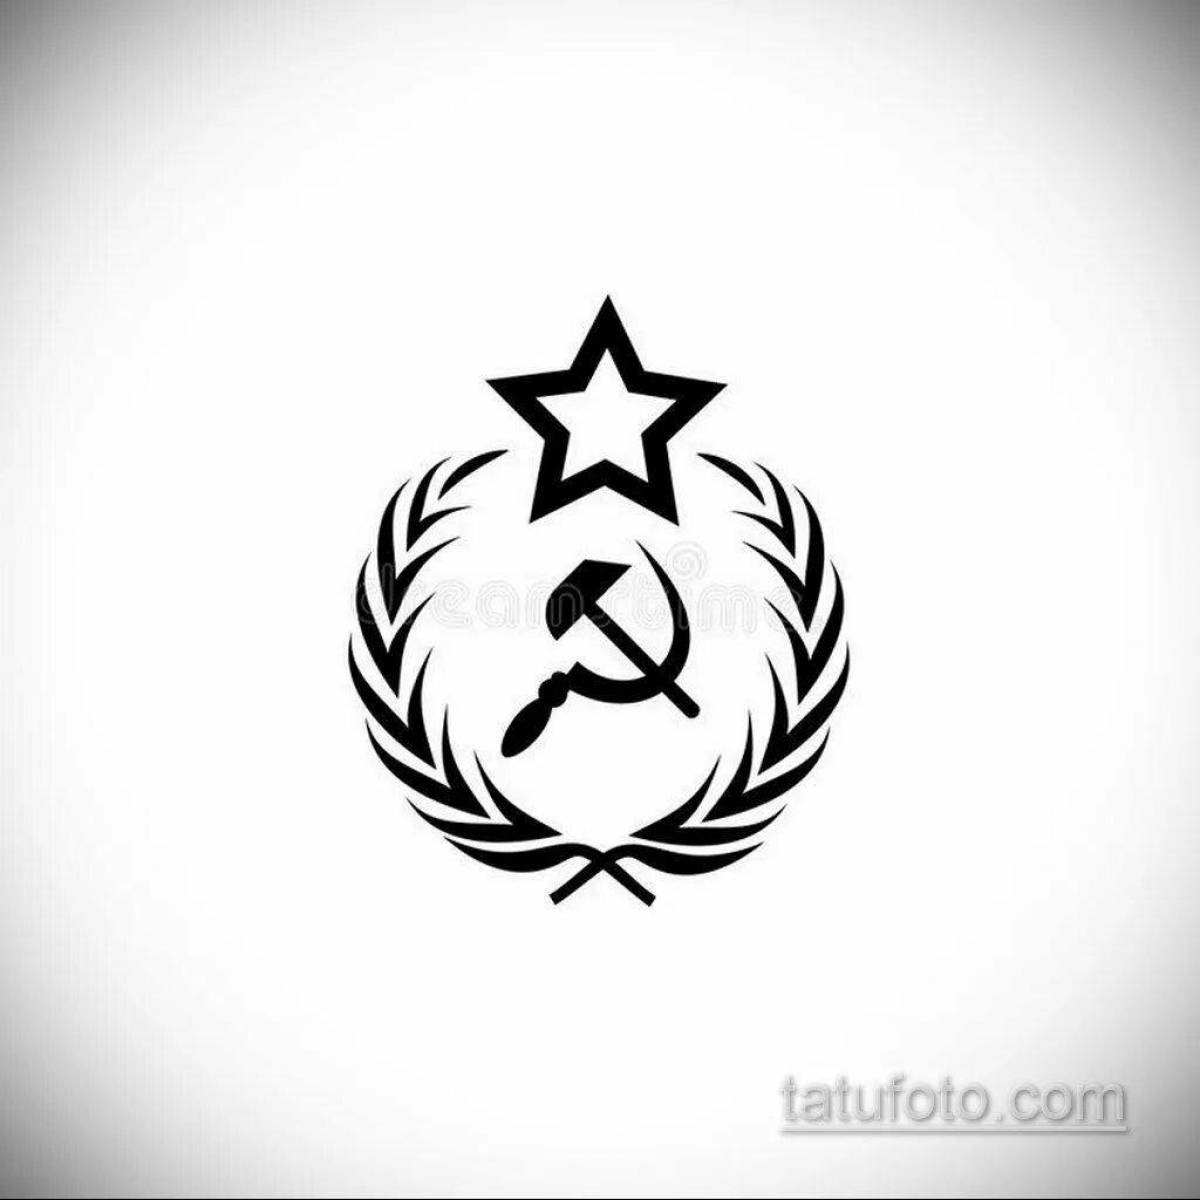 Раскраска величественный герб советского союза